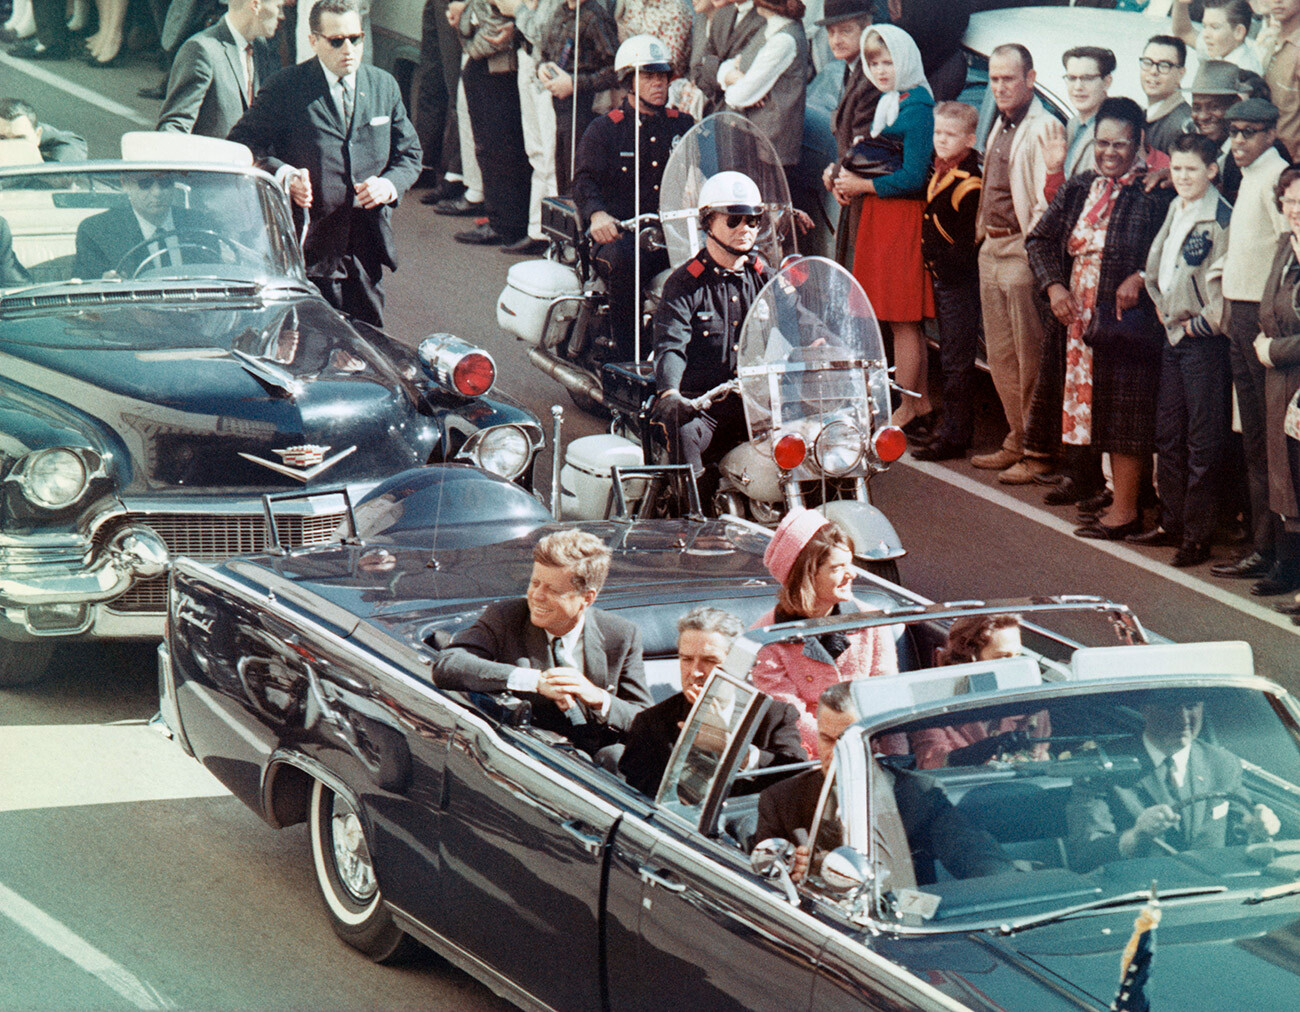 Il presidente Kennedy e la sua signora sorridono alla folla che si accalca lungo il percorso del loro corteo a Dallas, in Texas, il 22 novembre 1963. Pochi minuti dopo, Kennedy viene assassinato mentre la sua auto attraversava Dealey Plaza